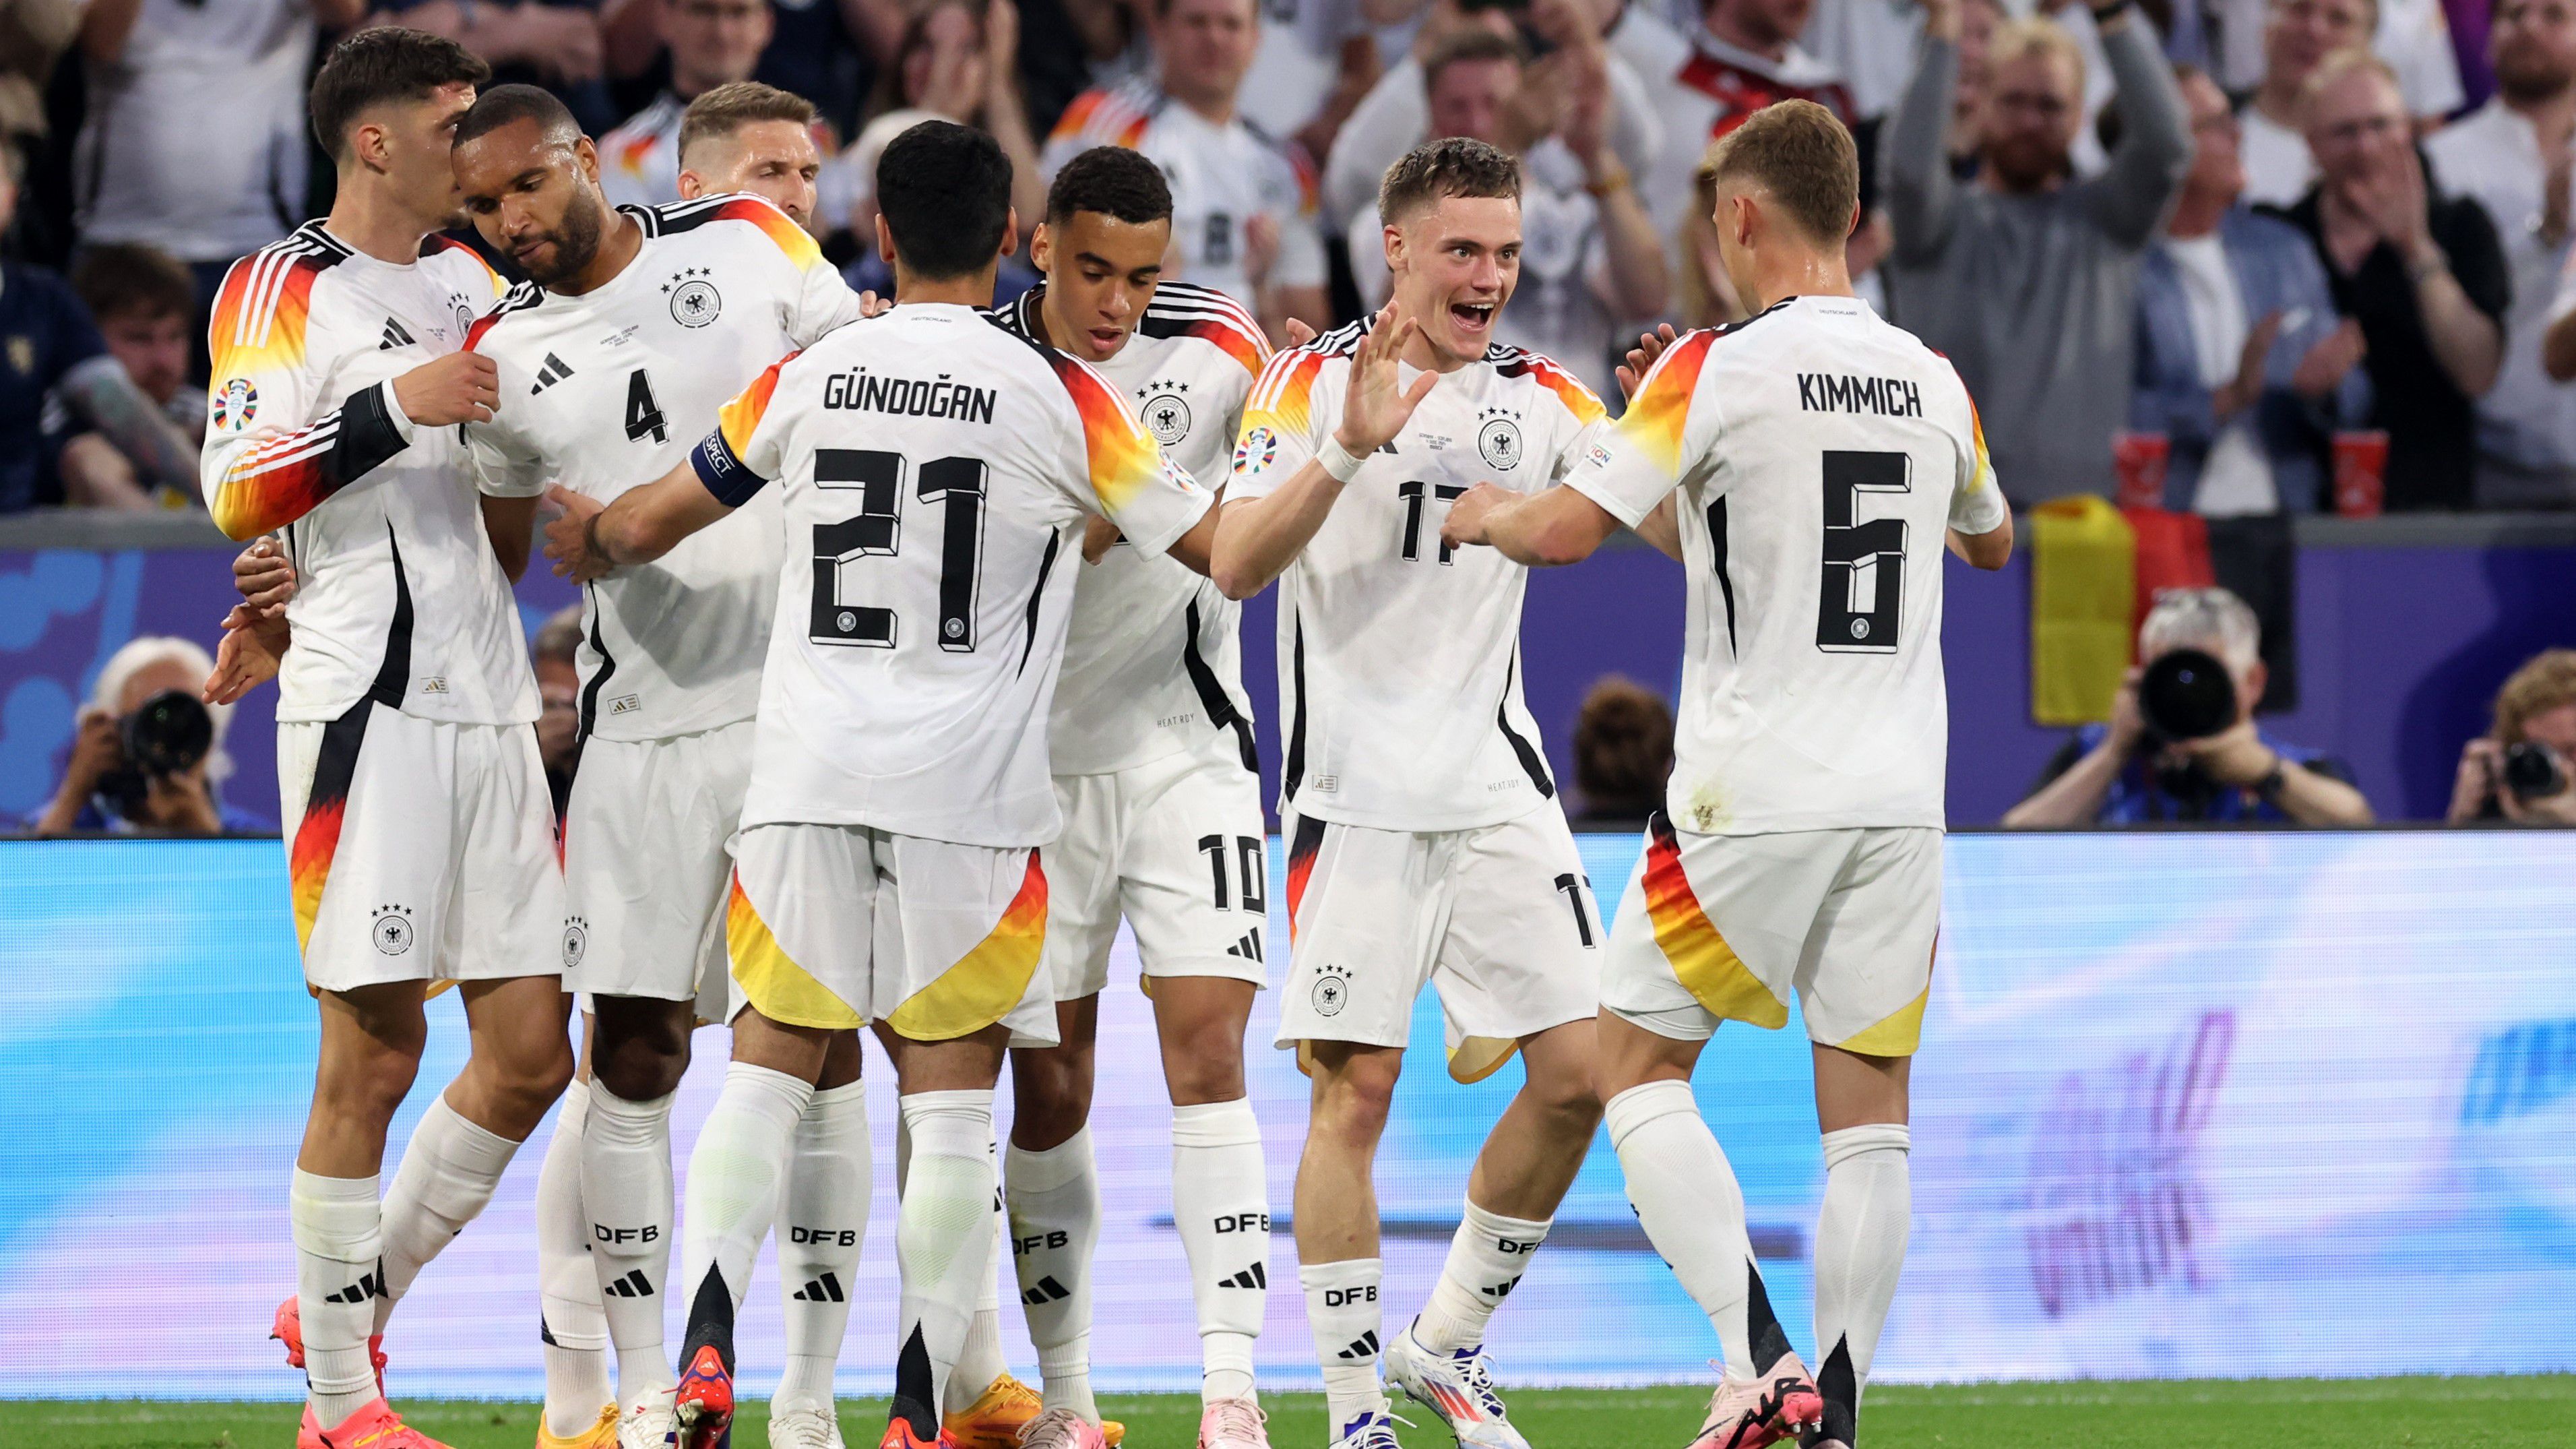 Öt szabályos gólnak is örülhettek a német játékosok, no és egy hatodiknak is, de utóbbit a játékvezető les miatt visszavonta. (Fotó: Getty Images)